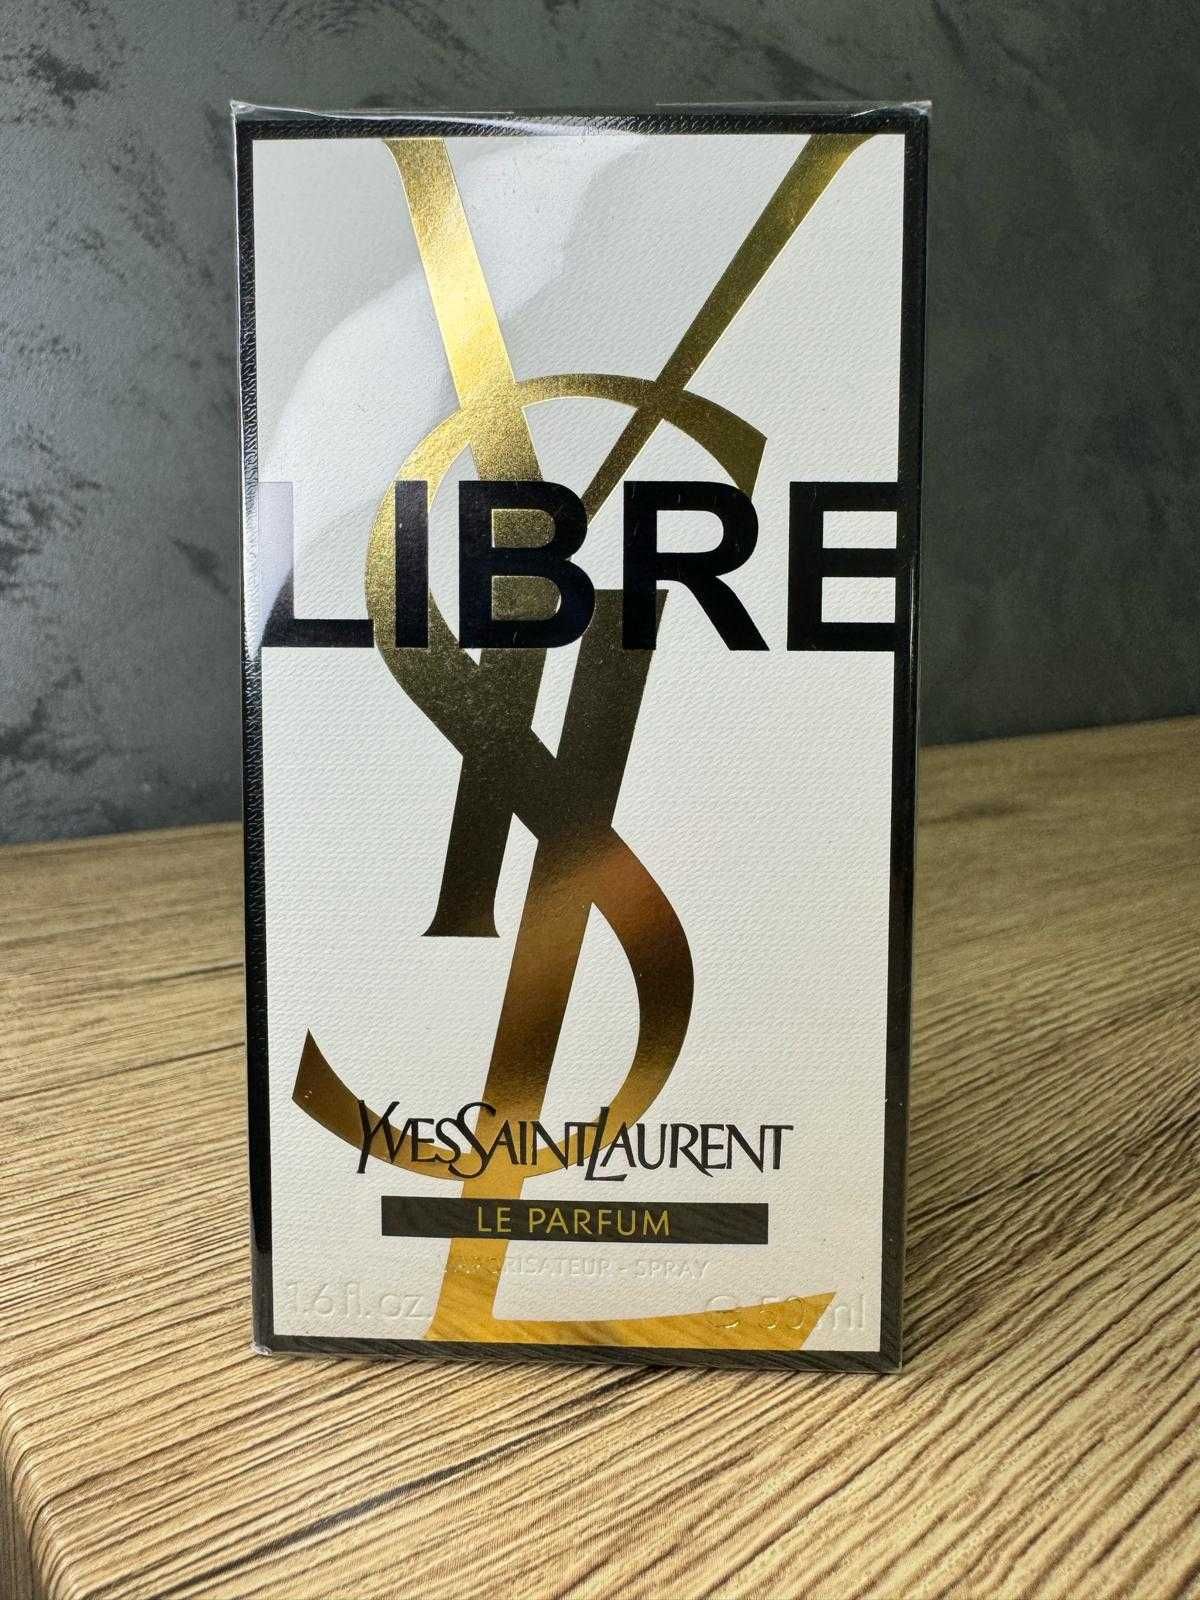 Yves Saint Laurent Libre LE PARFUM 50ml, 100% original,NOU, verif pers